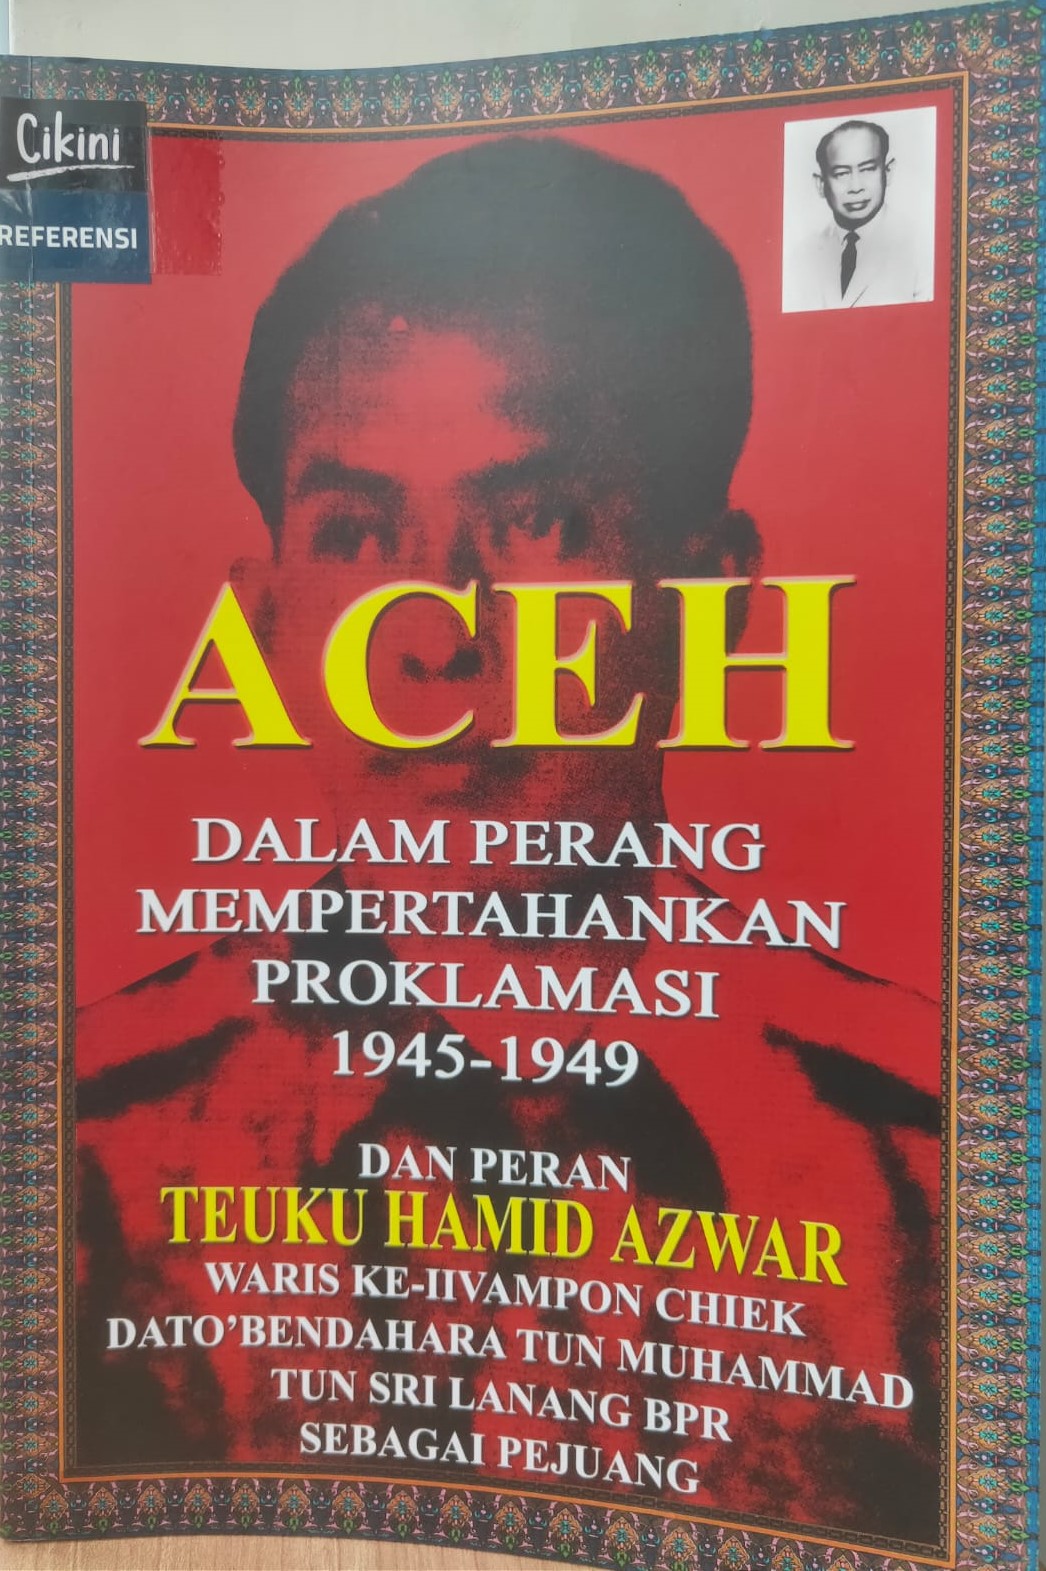 Aceh dalam Perang Mempertahankan Proklamasi Kemerdekaan 1945-1949 dan Peranan Teuku Hamid Azwar Sebagai Pejuang